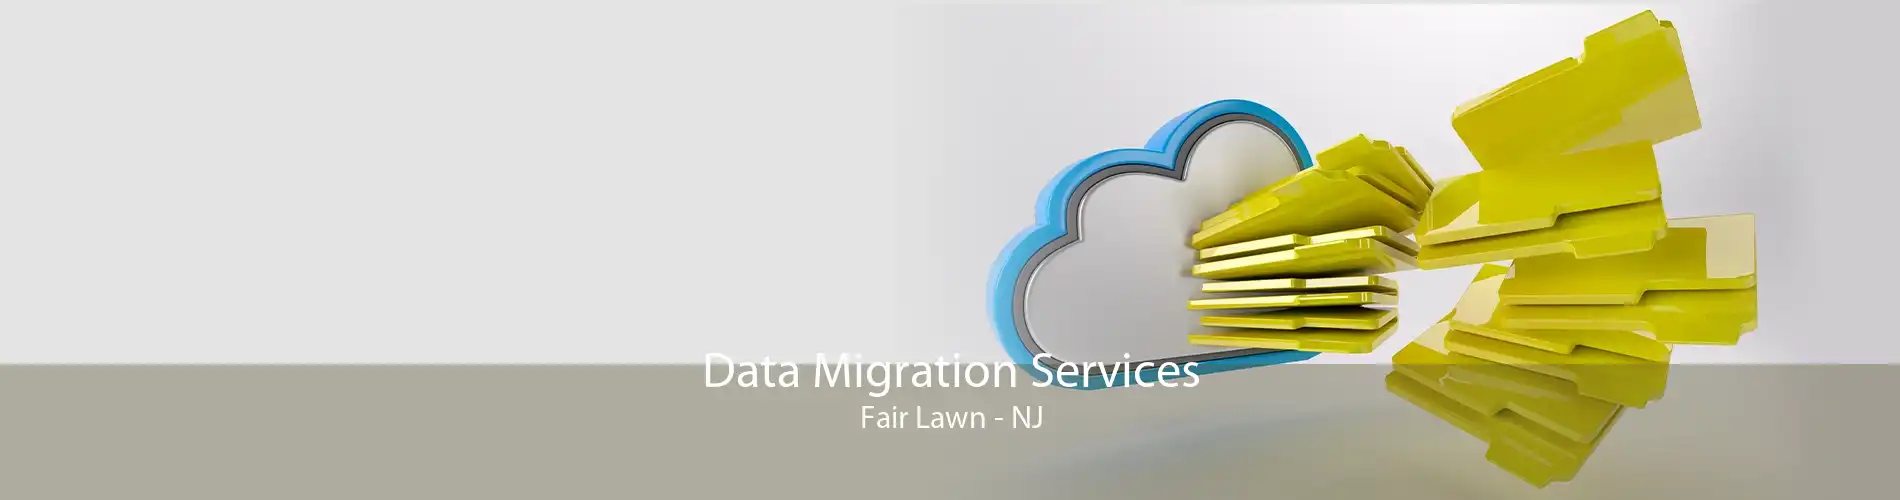 Data Migration Services Fair Lawn - NJ